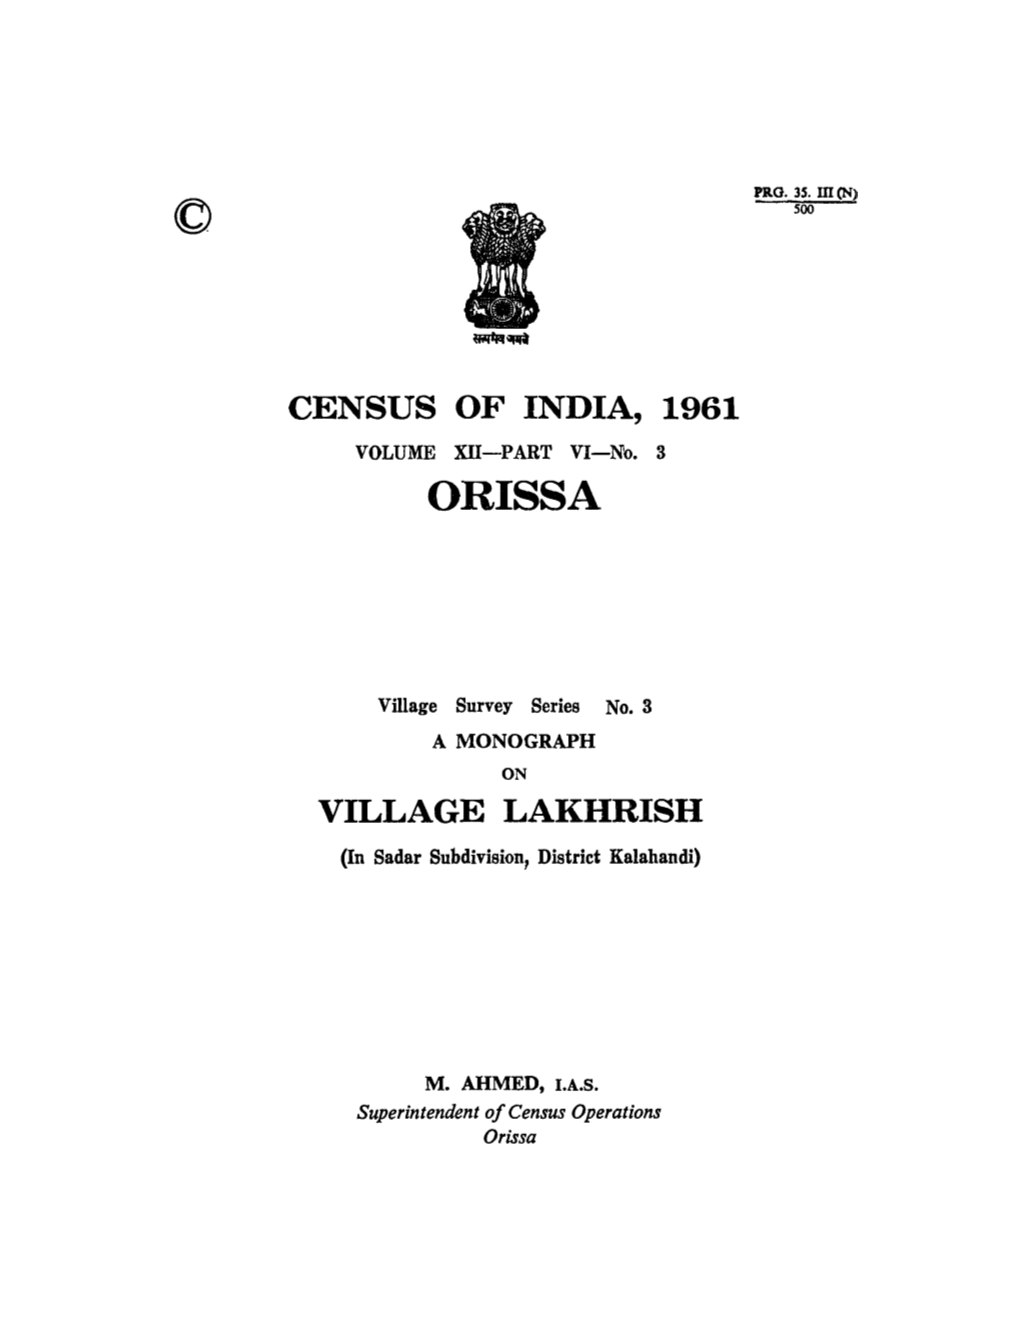 Monograph on Village Lakhrish, Part-VI-Volume-XII, Orissa